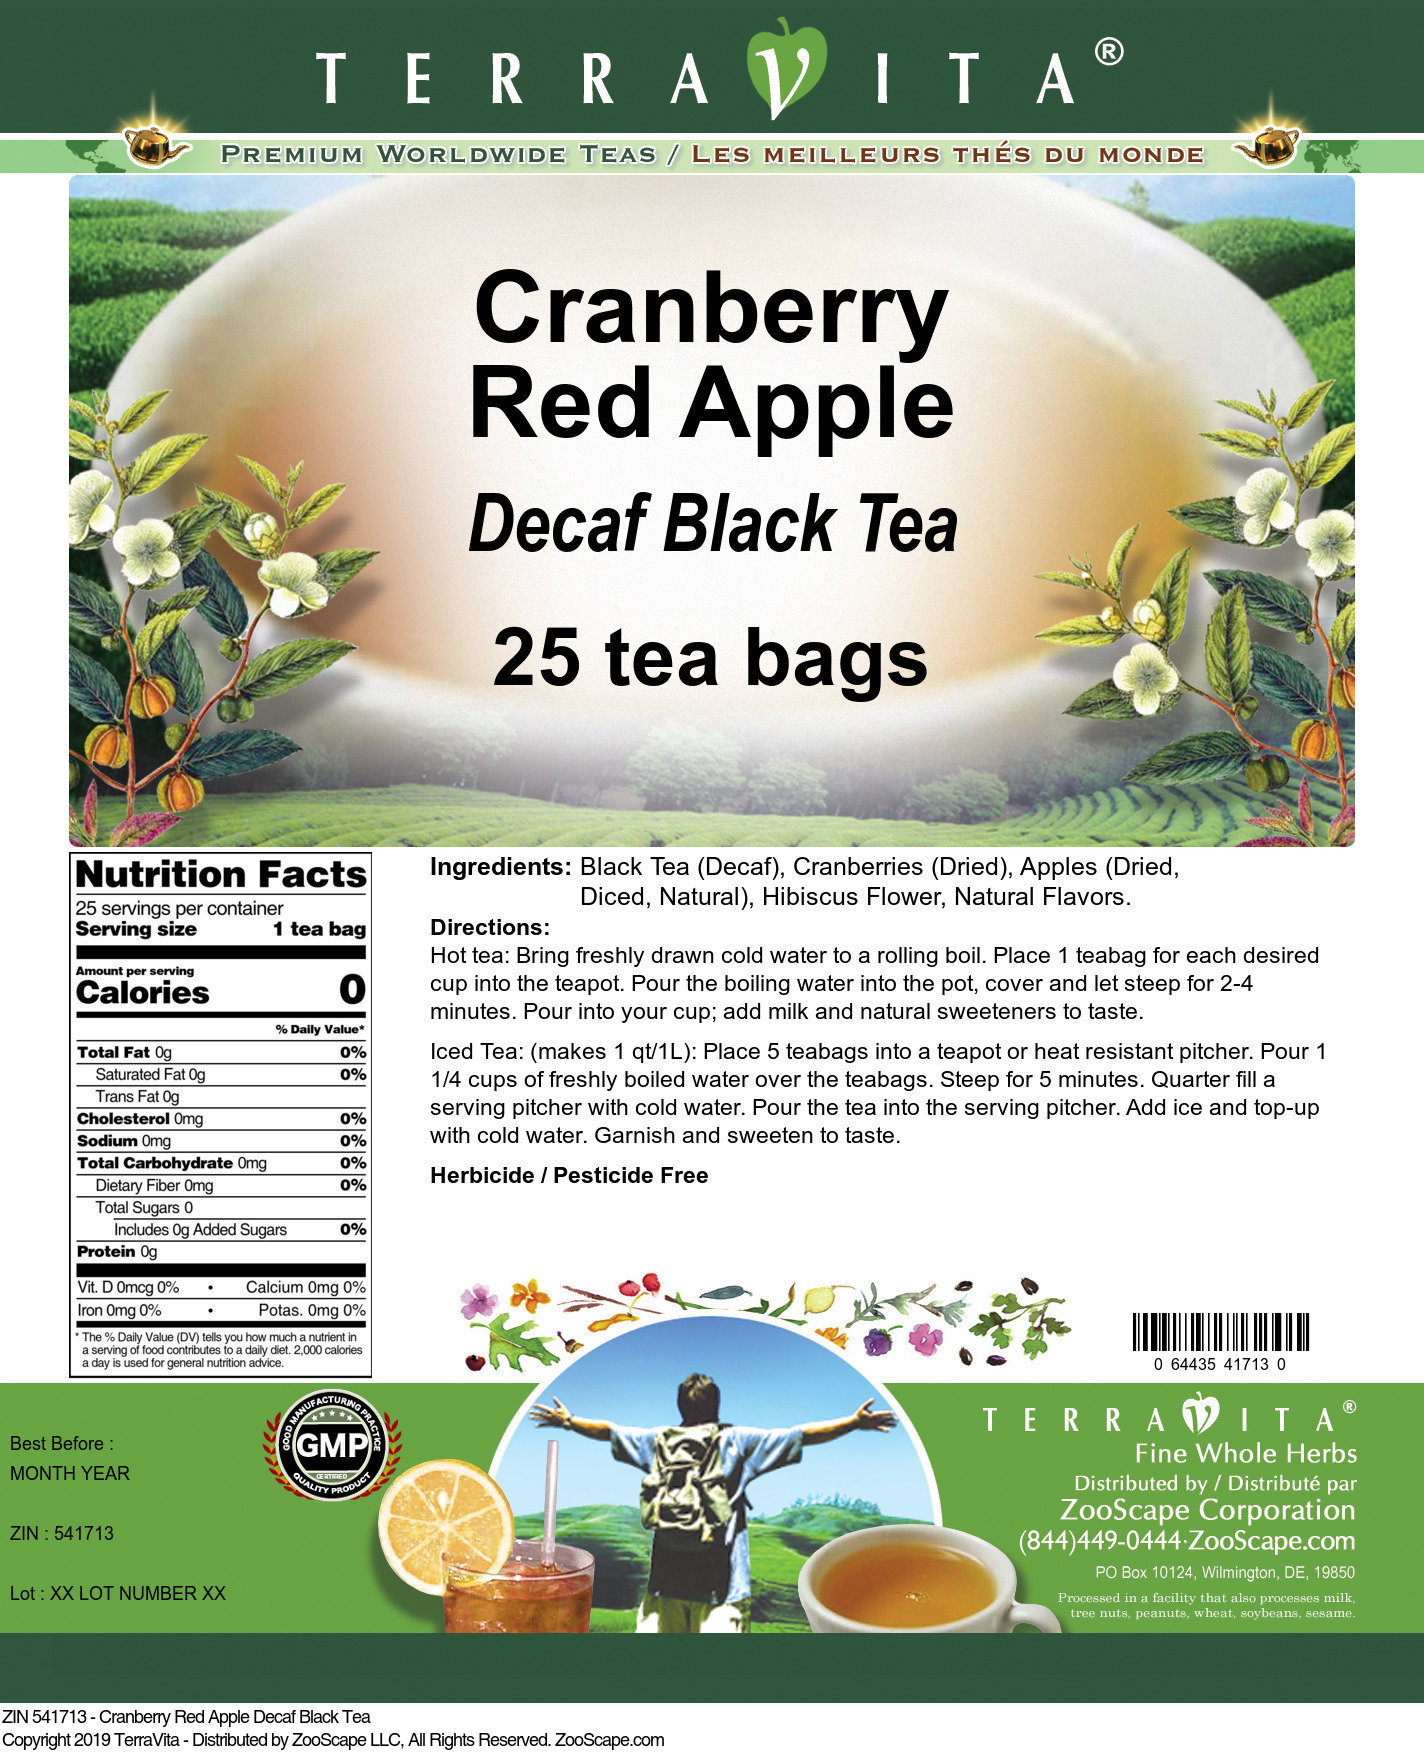 Cranberry Red Apple Decaf Black Tea - Label